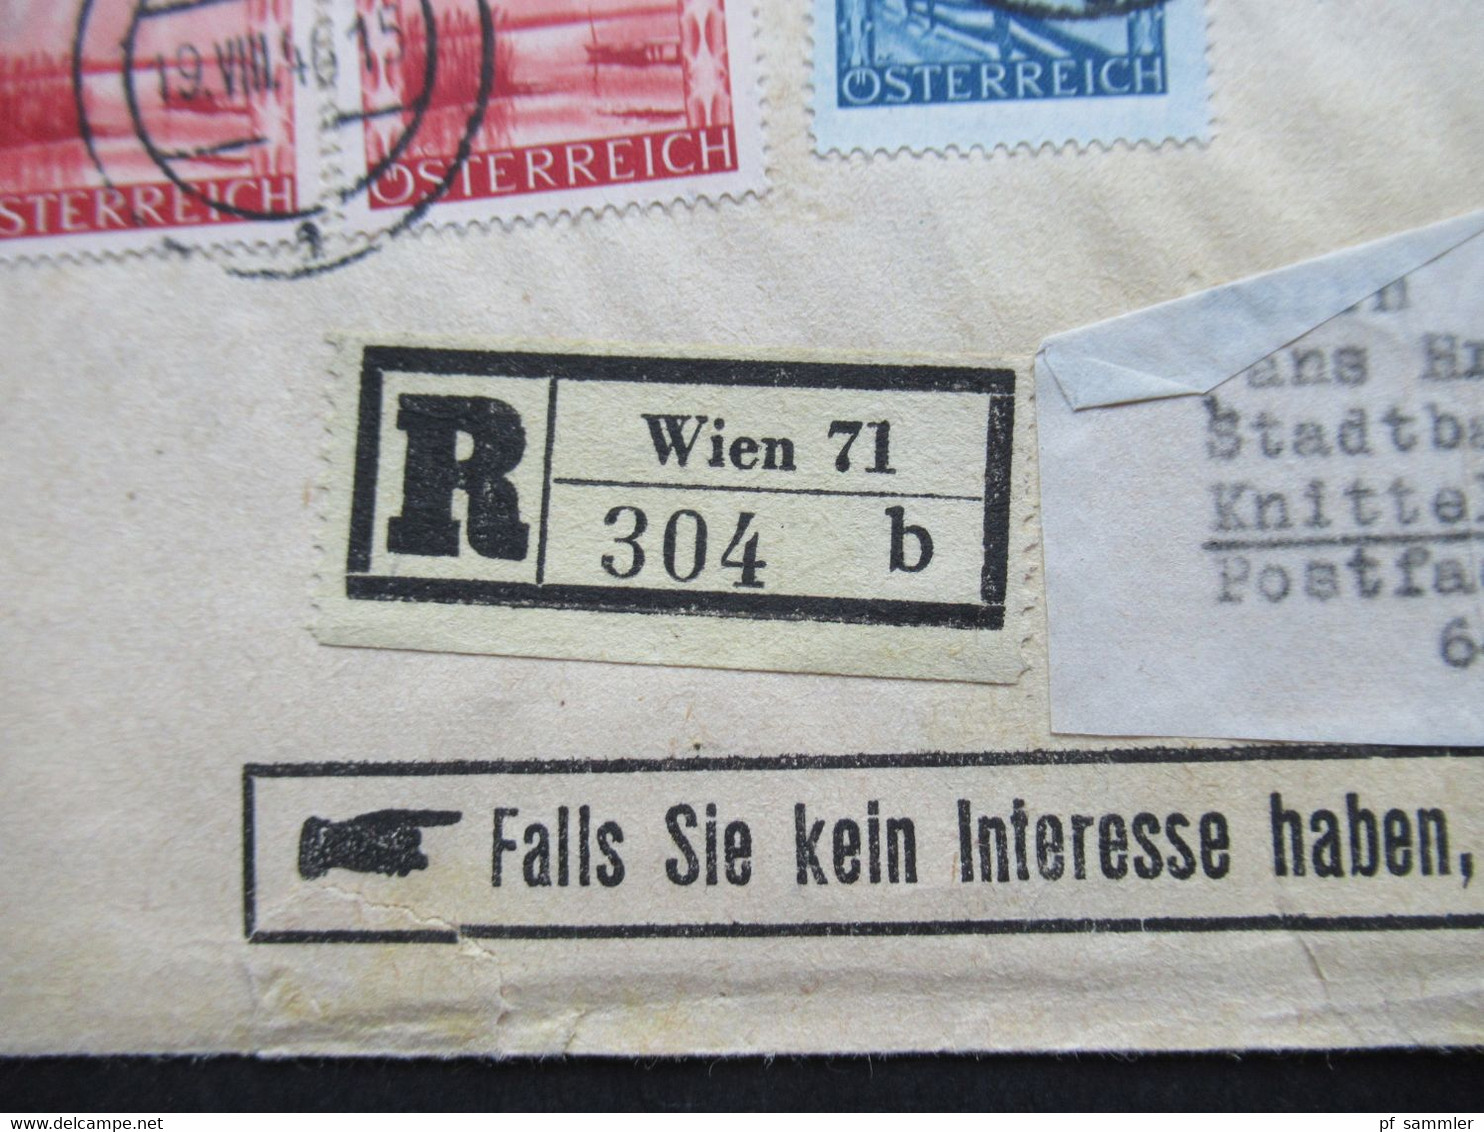 Österreich 1946 Drucksache Sabeff Post Einschreiben Wien 71 Nachnahme frankiert mit Landschaften Nr. 738 und 753 (2)